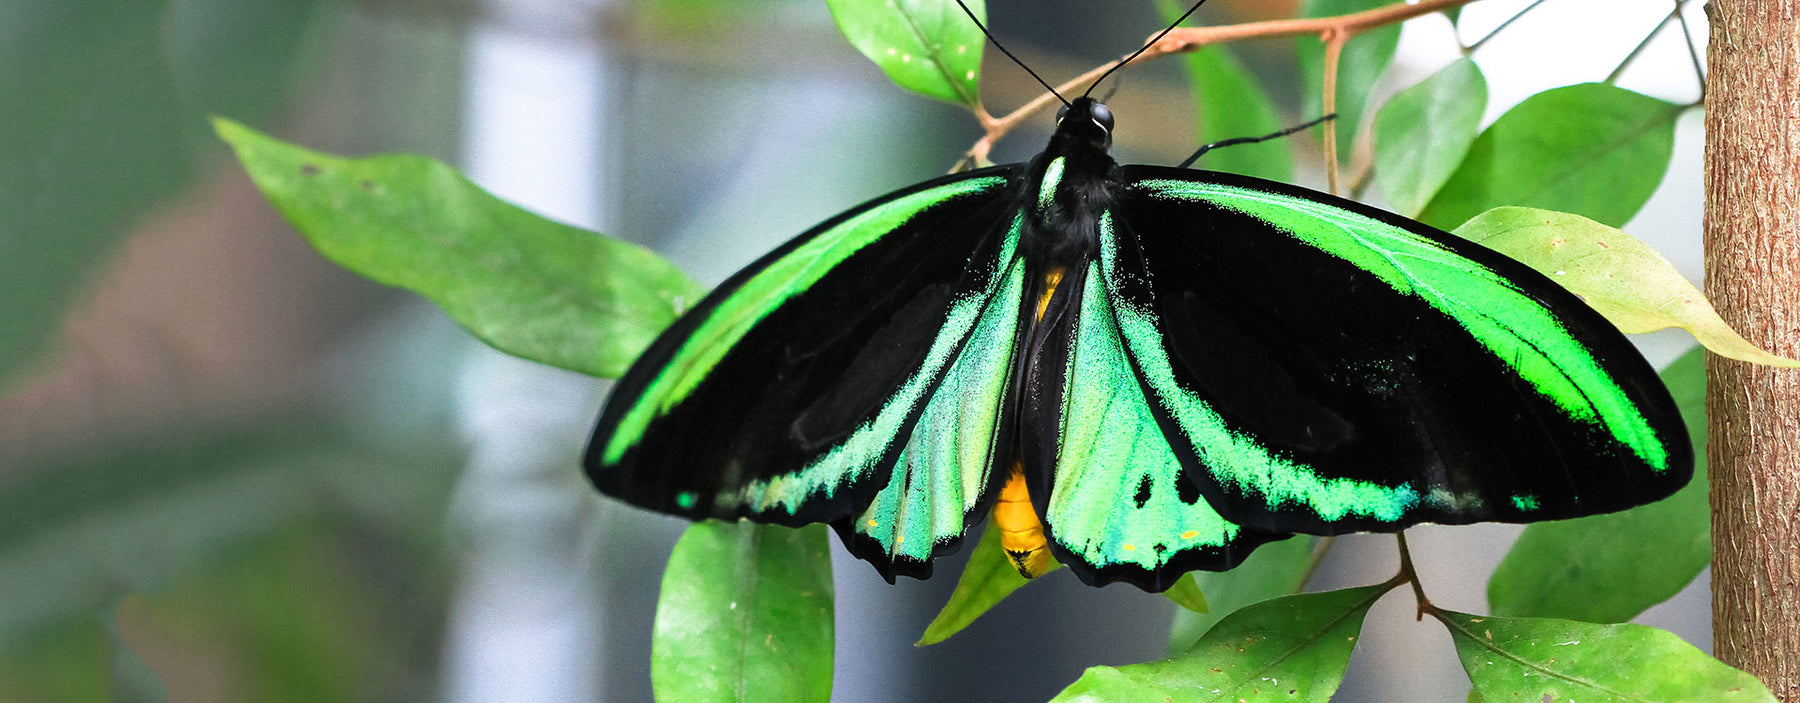 Green Birdwing butterfly